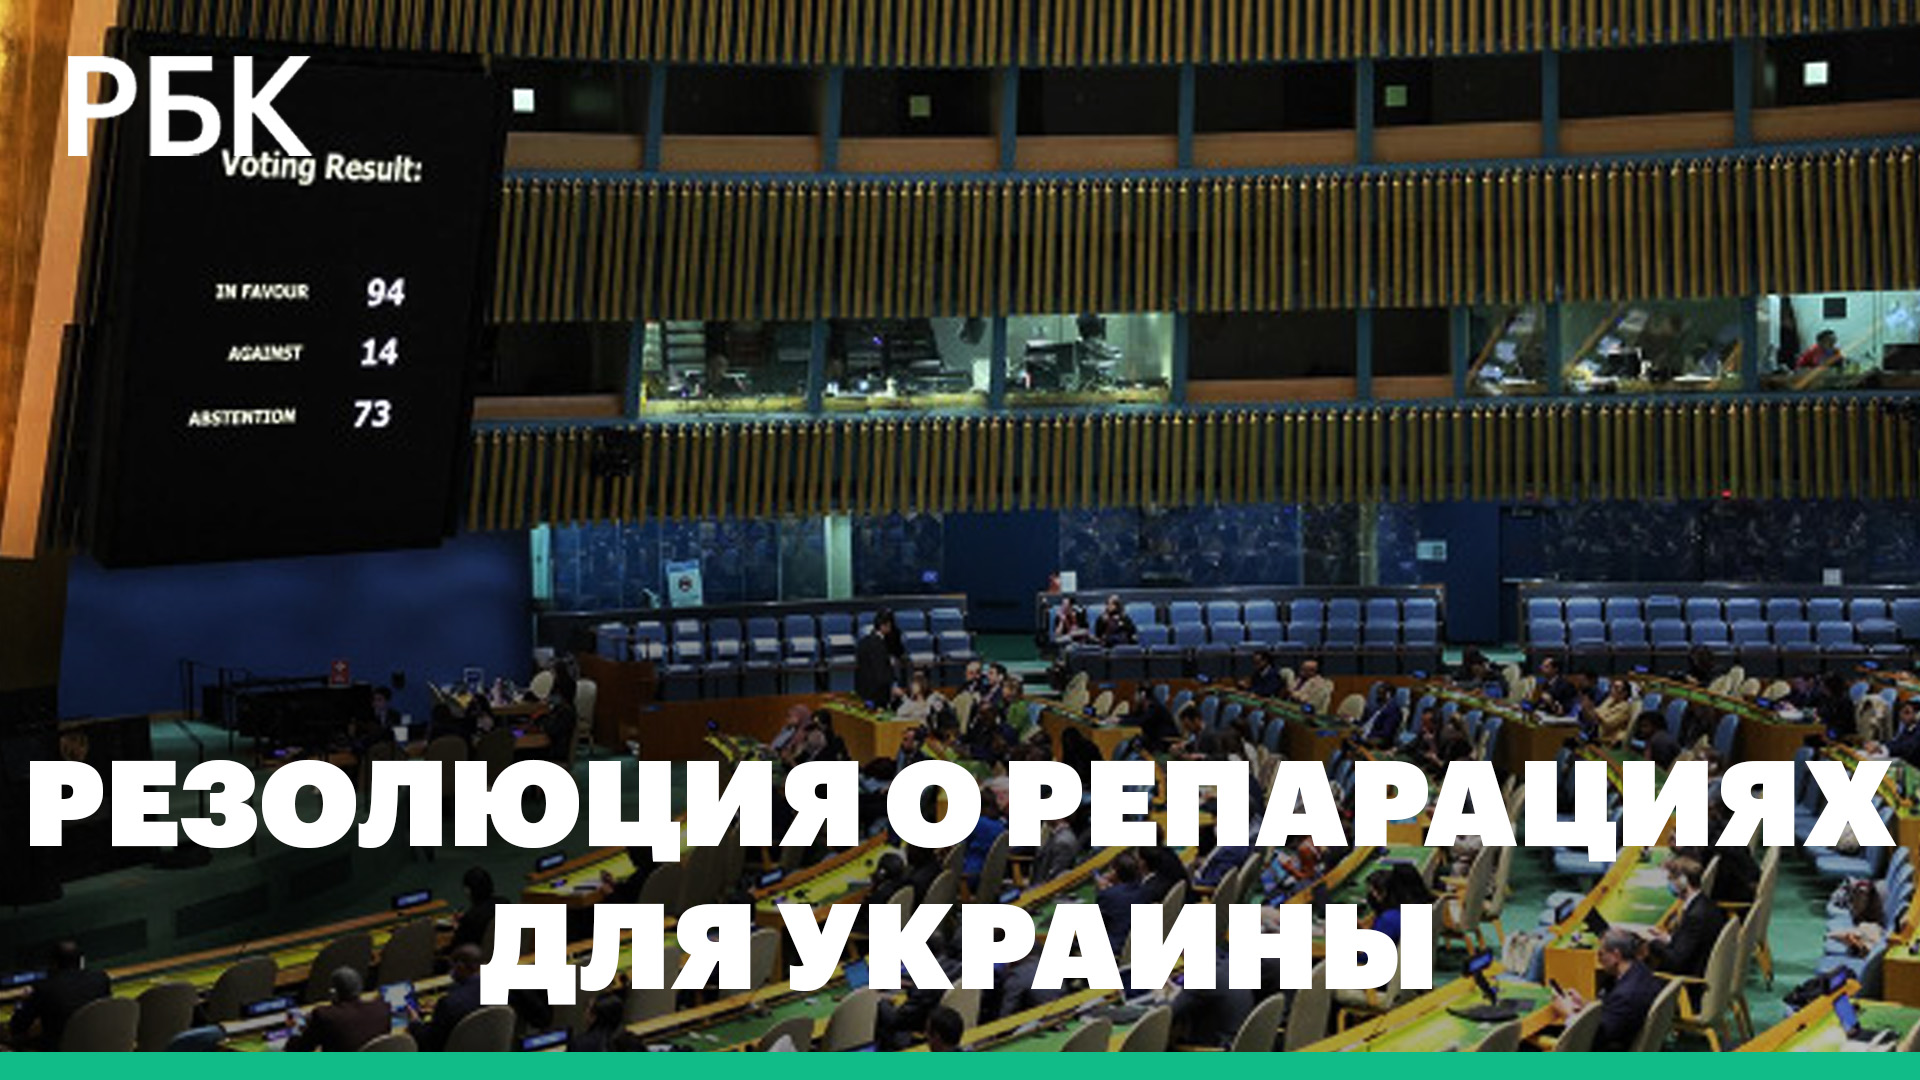 Генассамблея ООН приняла резолюцию о репарациях для Украины